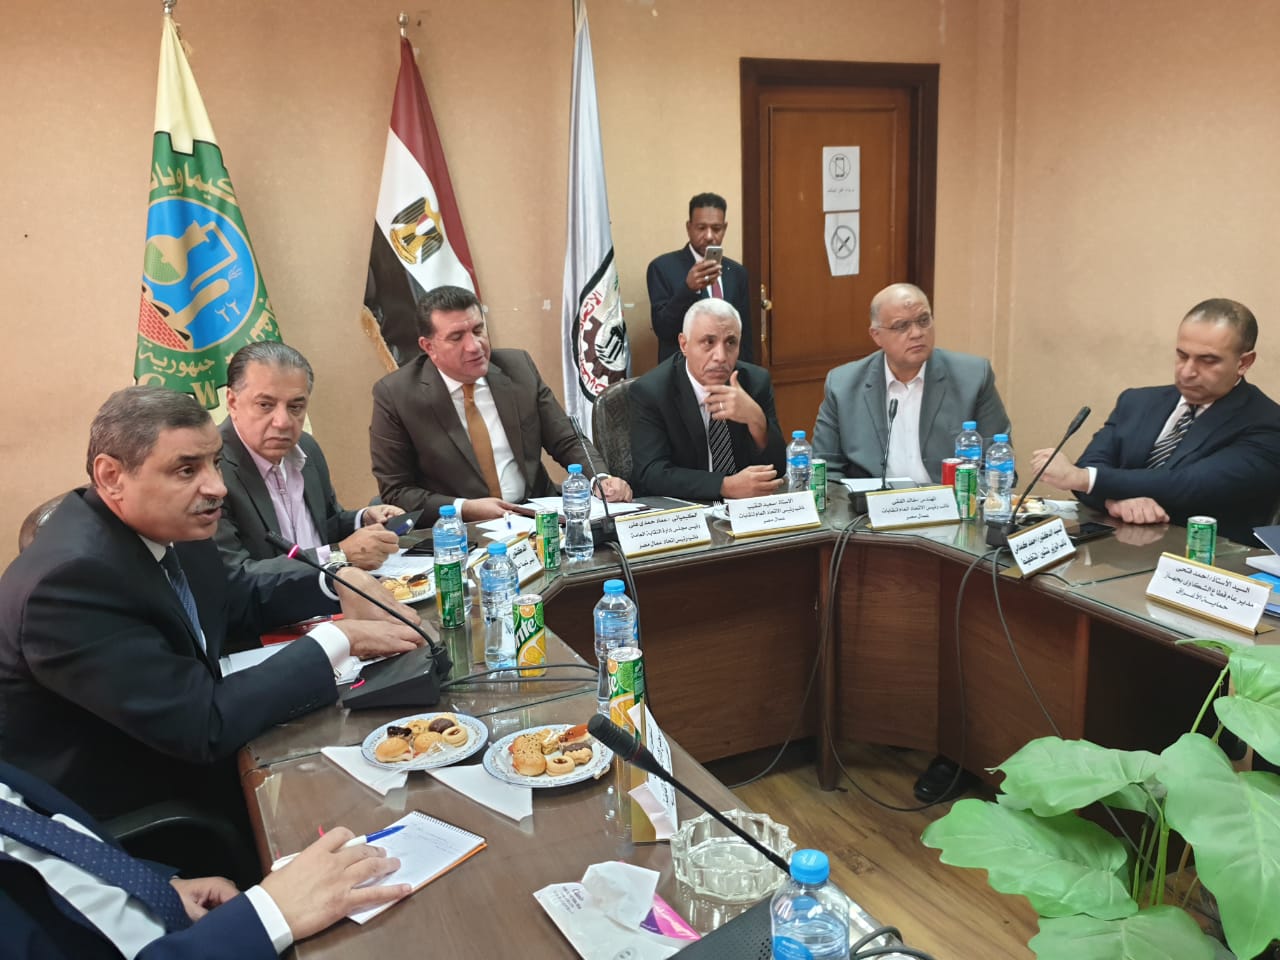 نائب وزيرة التخطيط: الصناعة هي المحرك الأساسي لنمو الاقتصاد في مصر..والحكومة تتخذ خطواتها لحماية المنتج الوطني